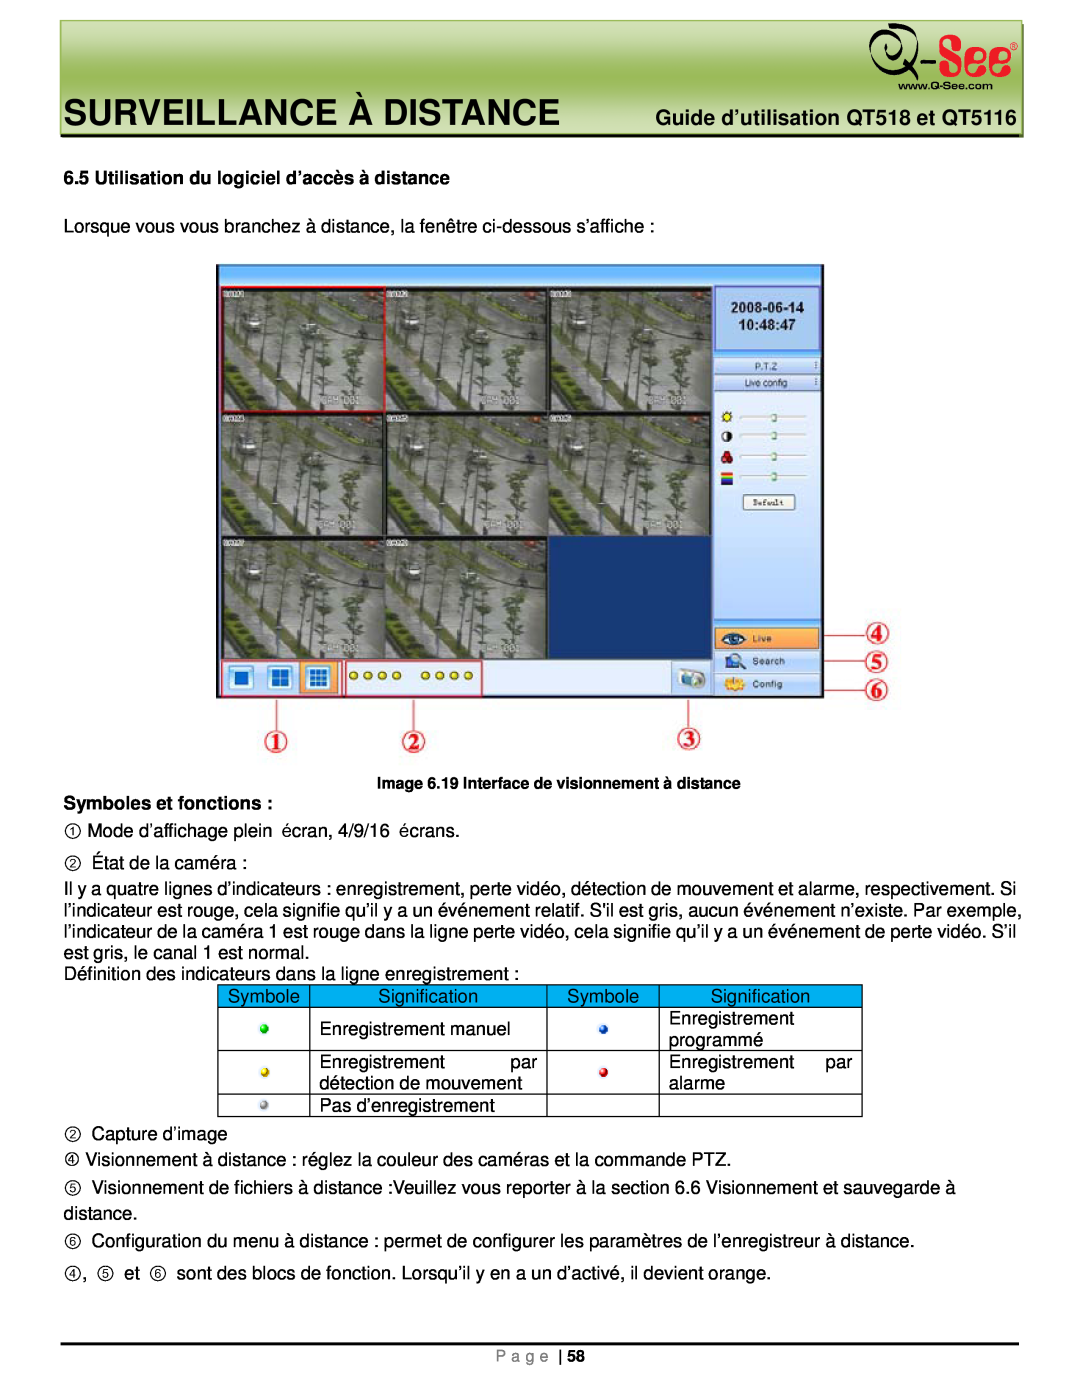 Q-See manual Surveillance À Distance, Guide d’utilisation QT518 et QT5116 